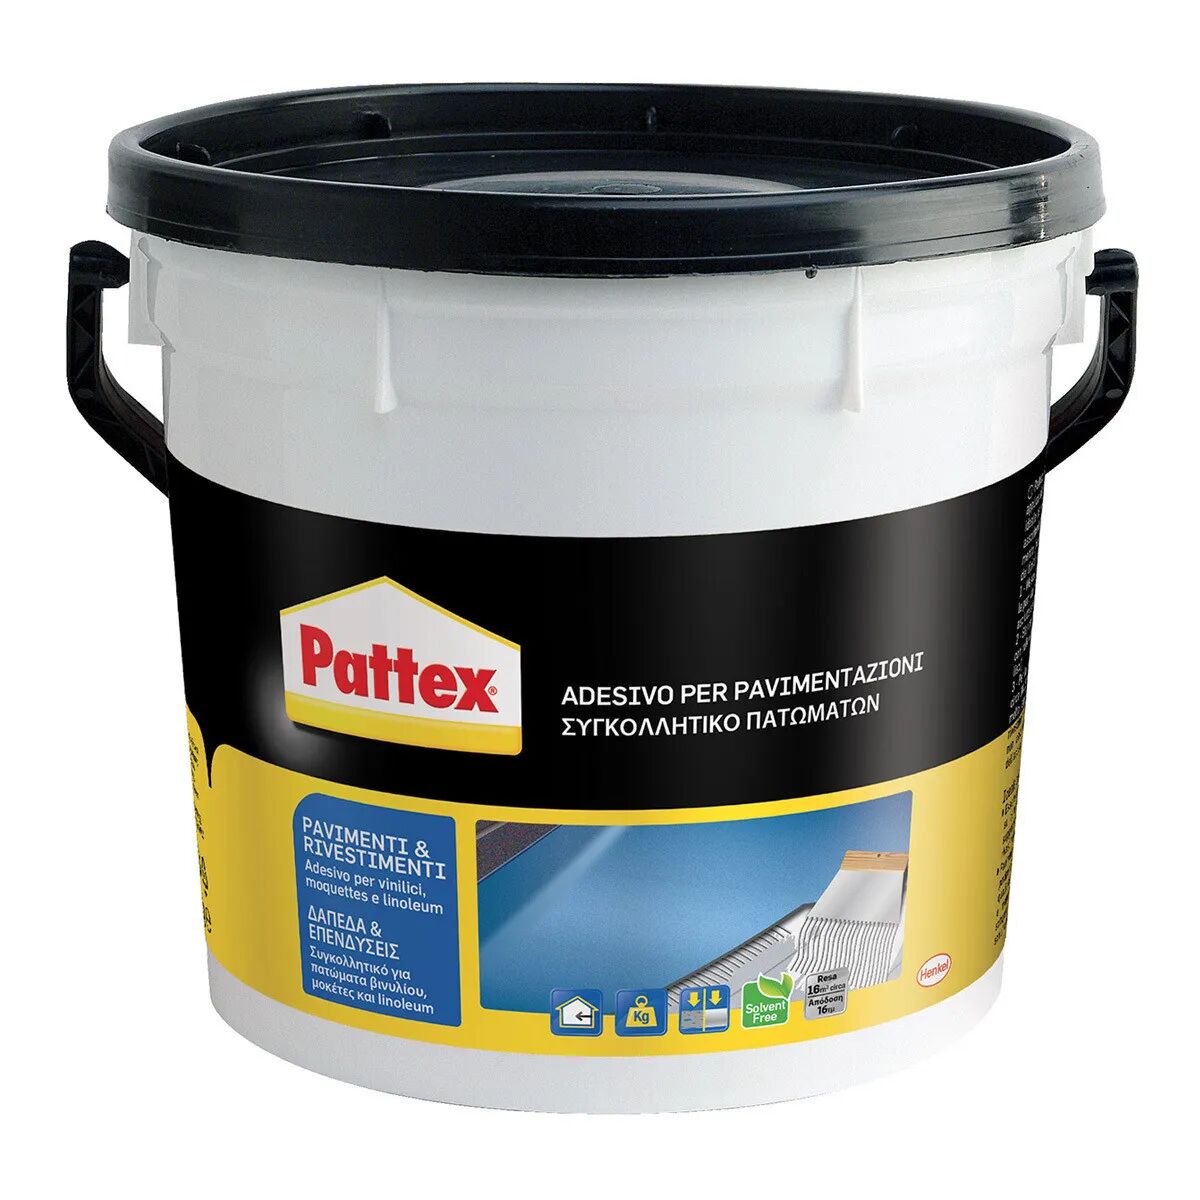 PATTEX Adesivo Pavimenti E Rivestimenti  5 Kg Per Vinilici Moquettes E Linoleum